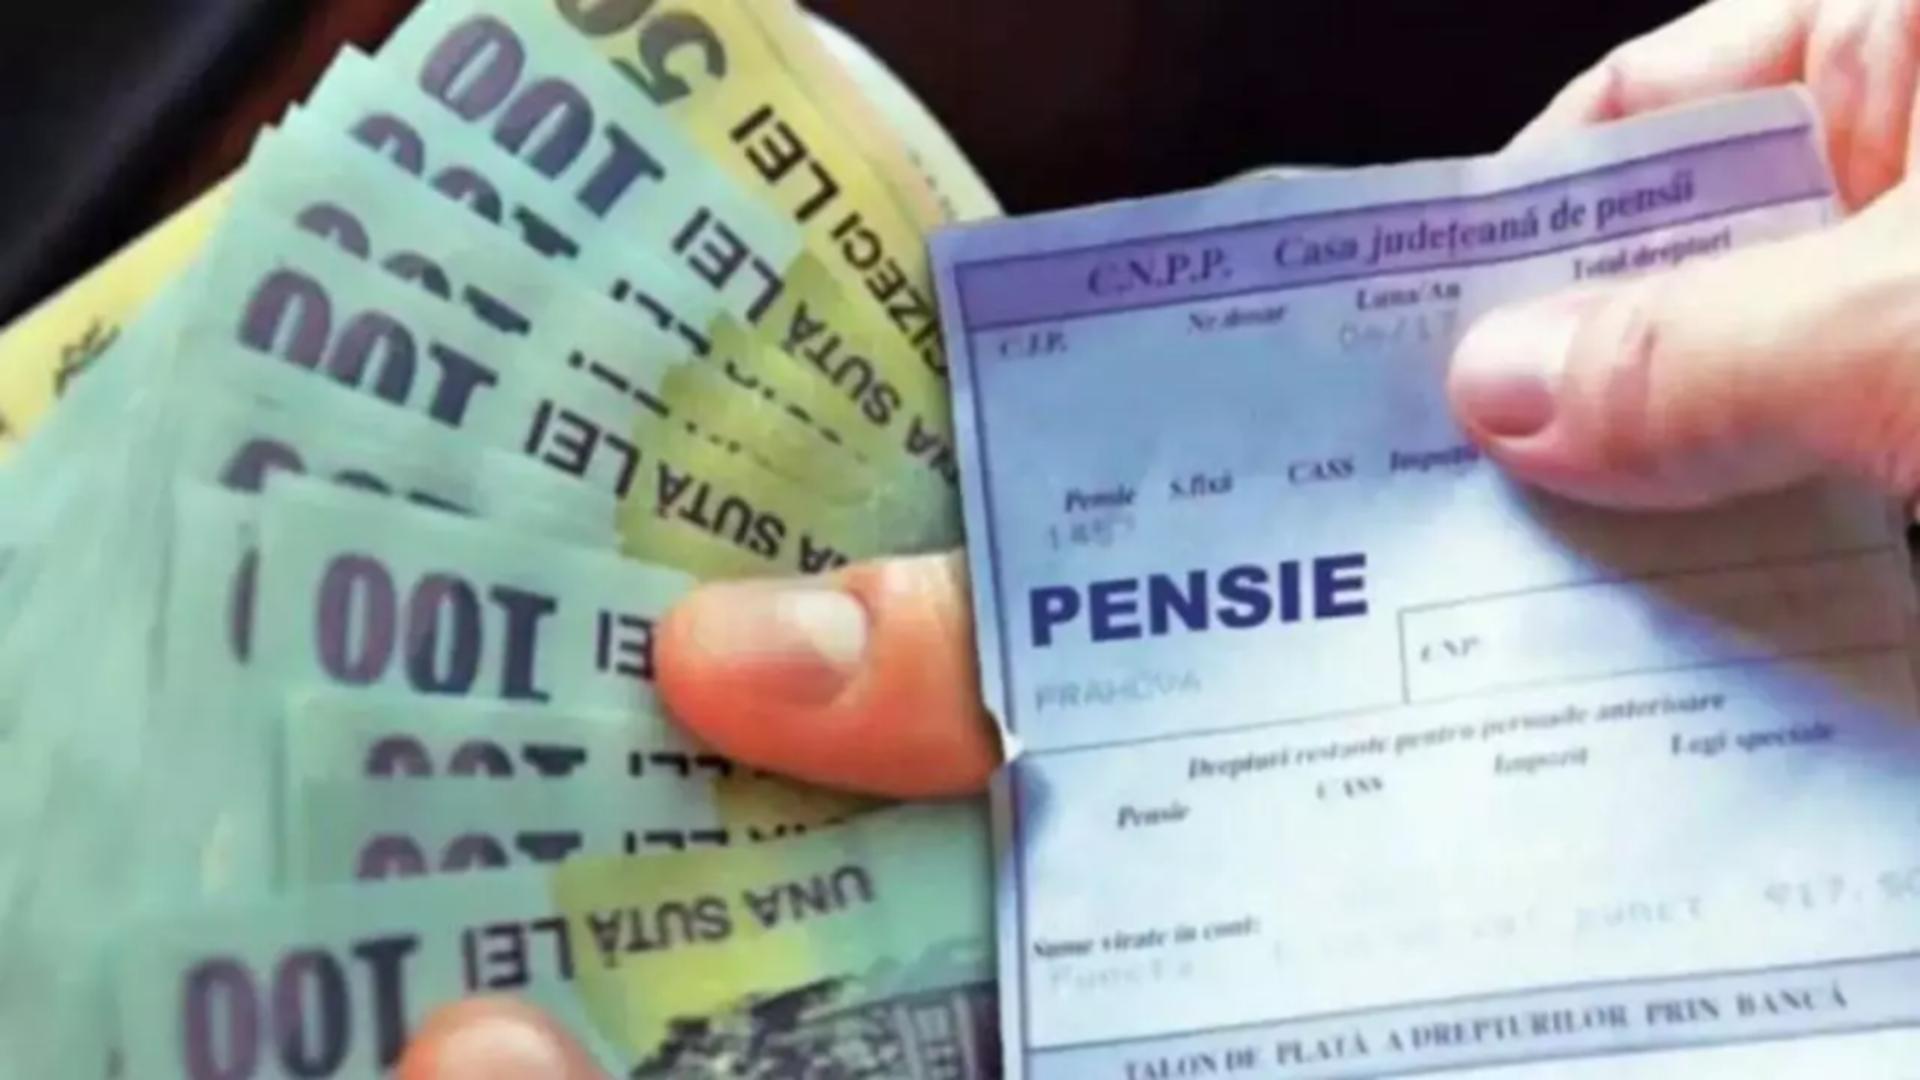 Poşta Română anunţă că a început distribuirea în avans a pensiilor aferente lunii mai